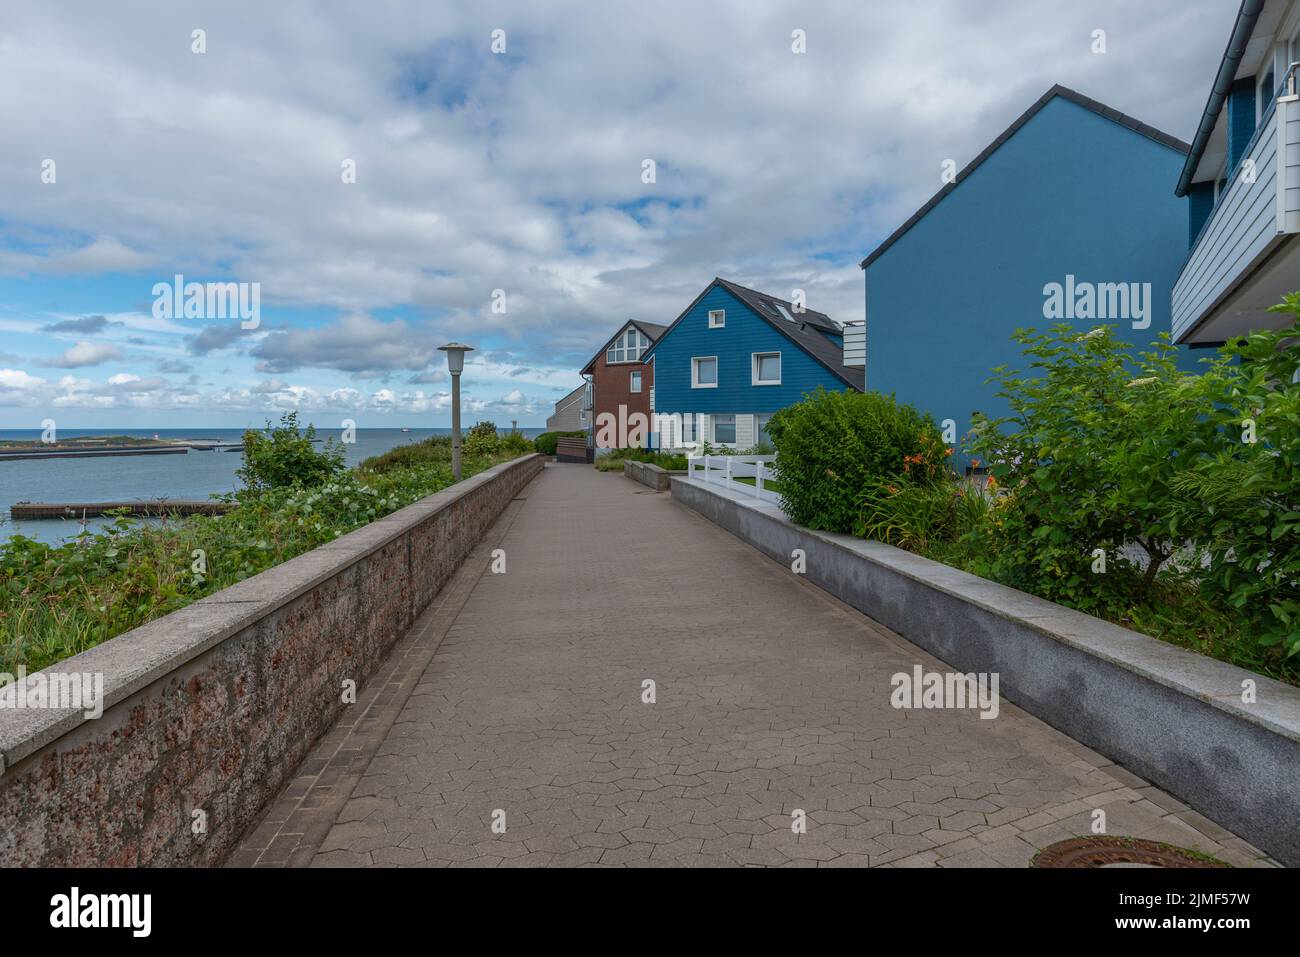 Architecture typique avec des couleurs de terre et des gables asymétriques dans le Haut-pays de l'île de la Mer du Nord Heligoland, Schleswig-Holstein, Allemagne du Nord Banque D'Images